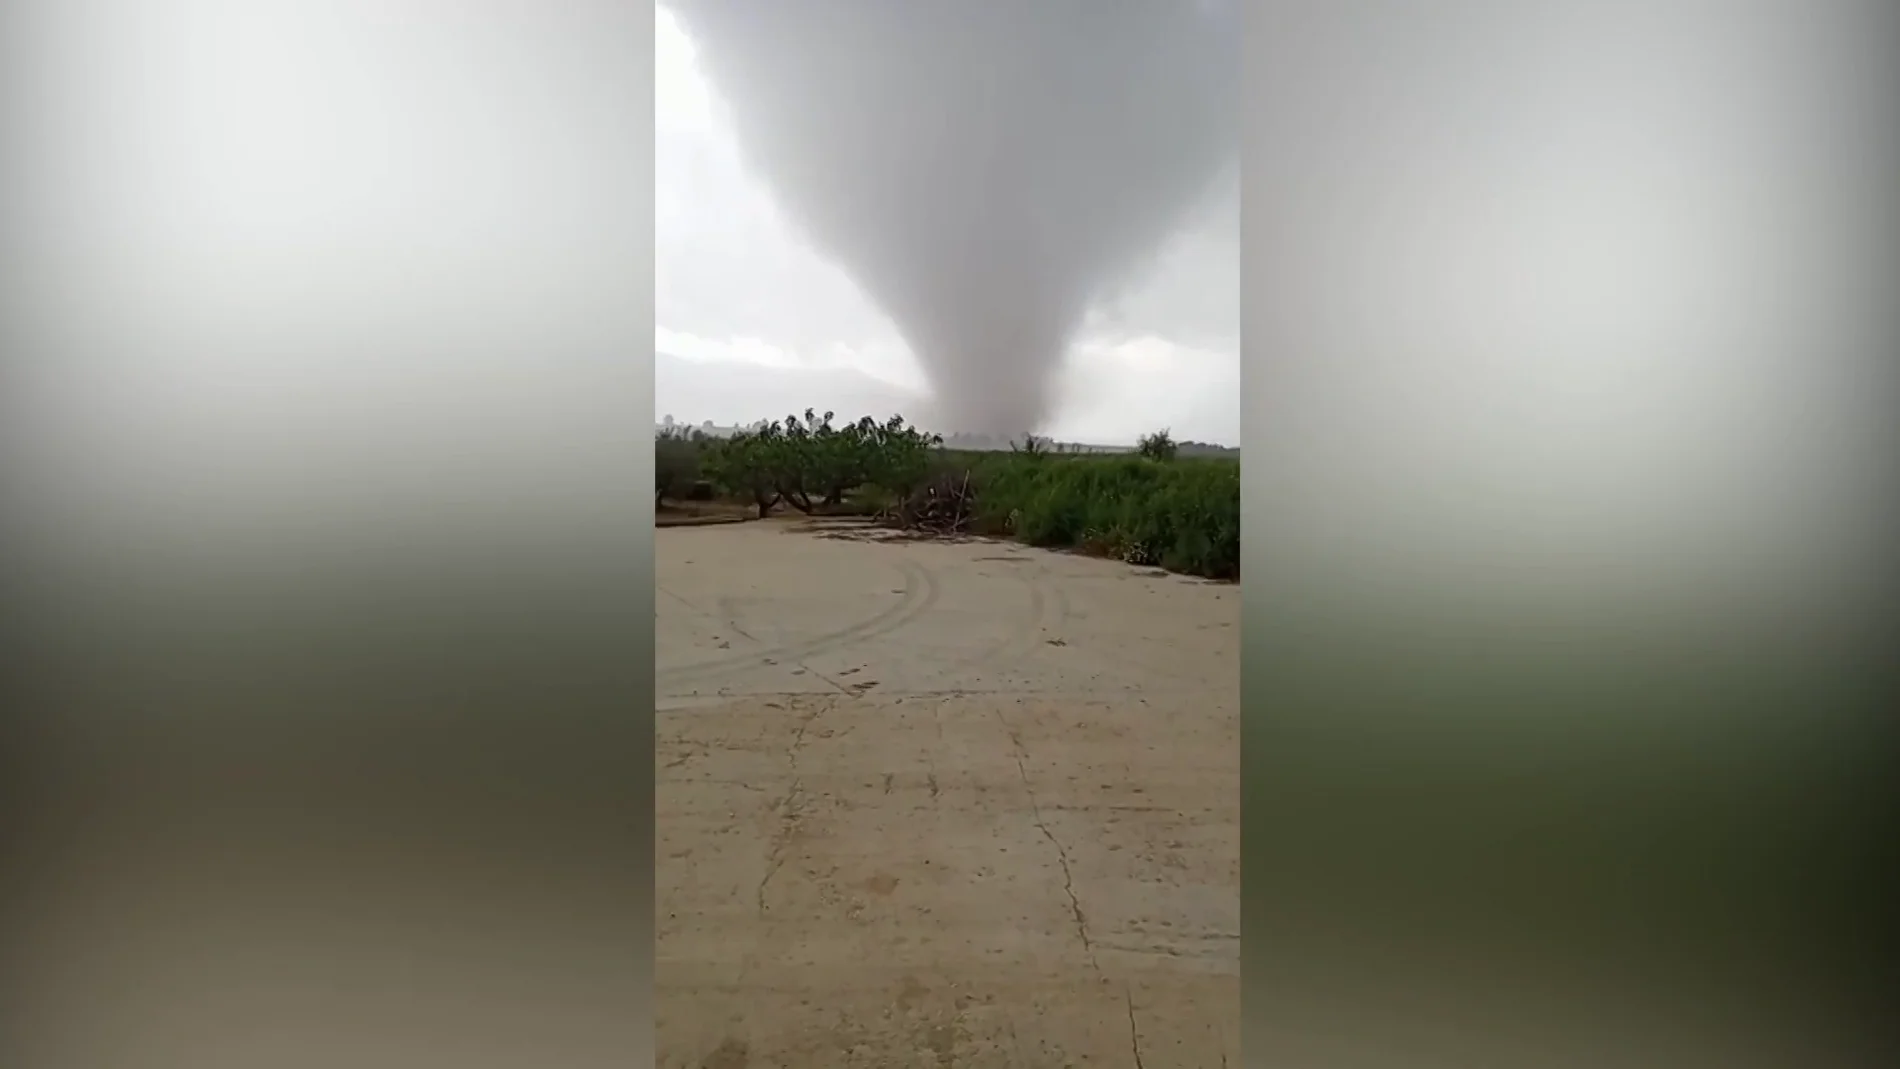 Tornado en Murcia